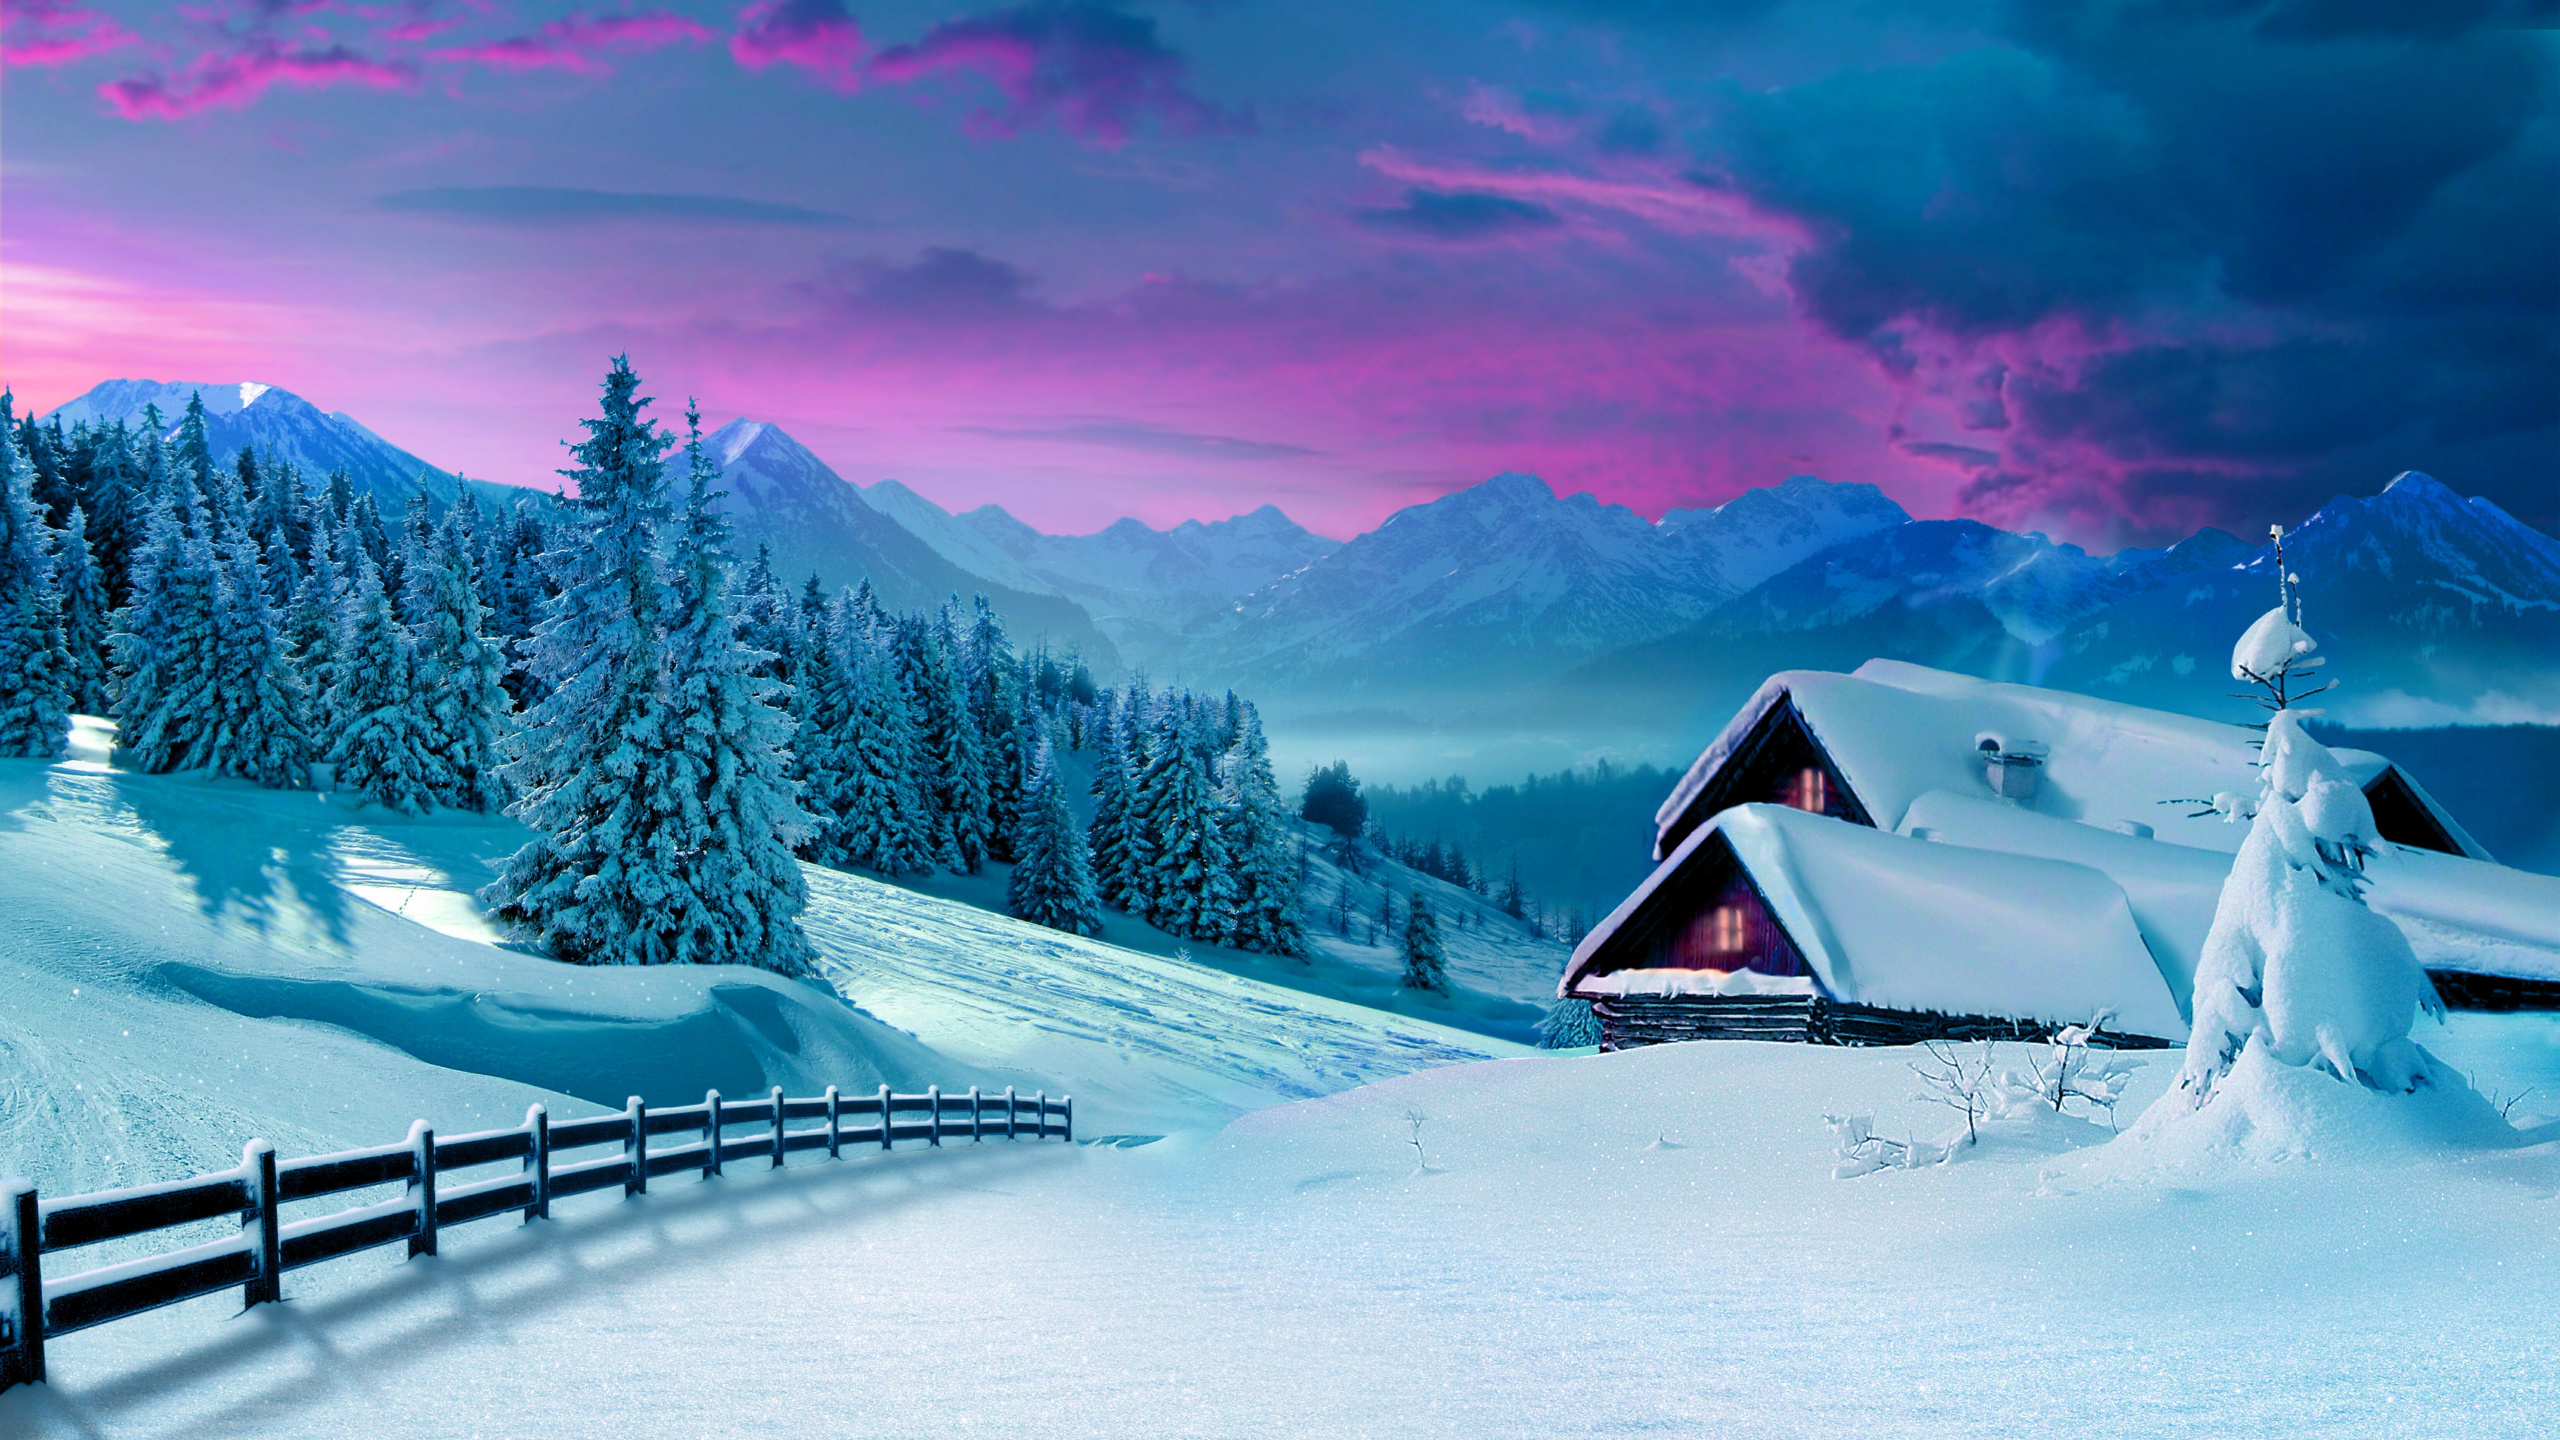 Braunes Holzhaus Auf Schneebedecktem Boden in Der Nähe Von Bäumen Und Bergen Tagsüber. Wallpaper in 2560x1440 Resolution